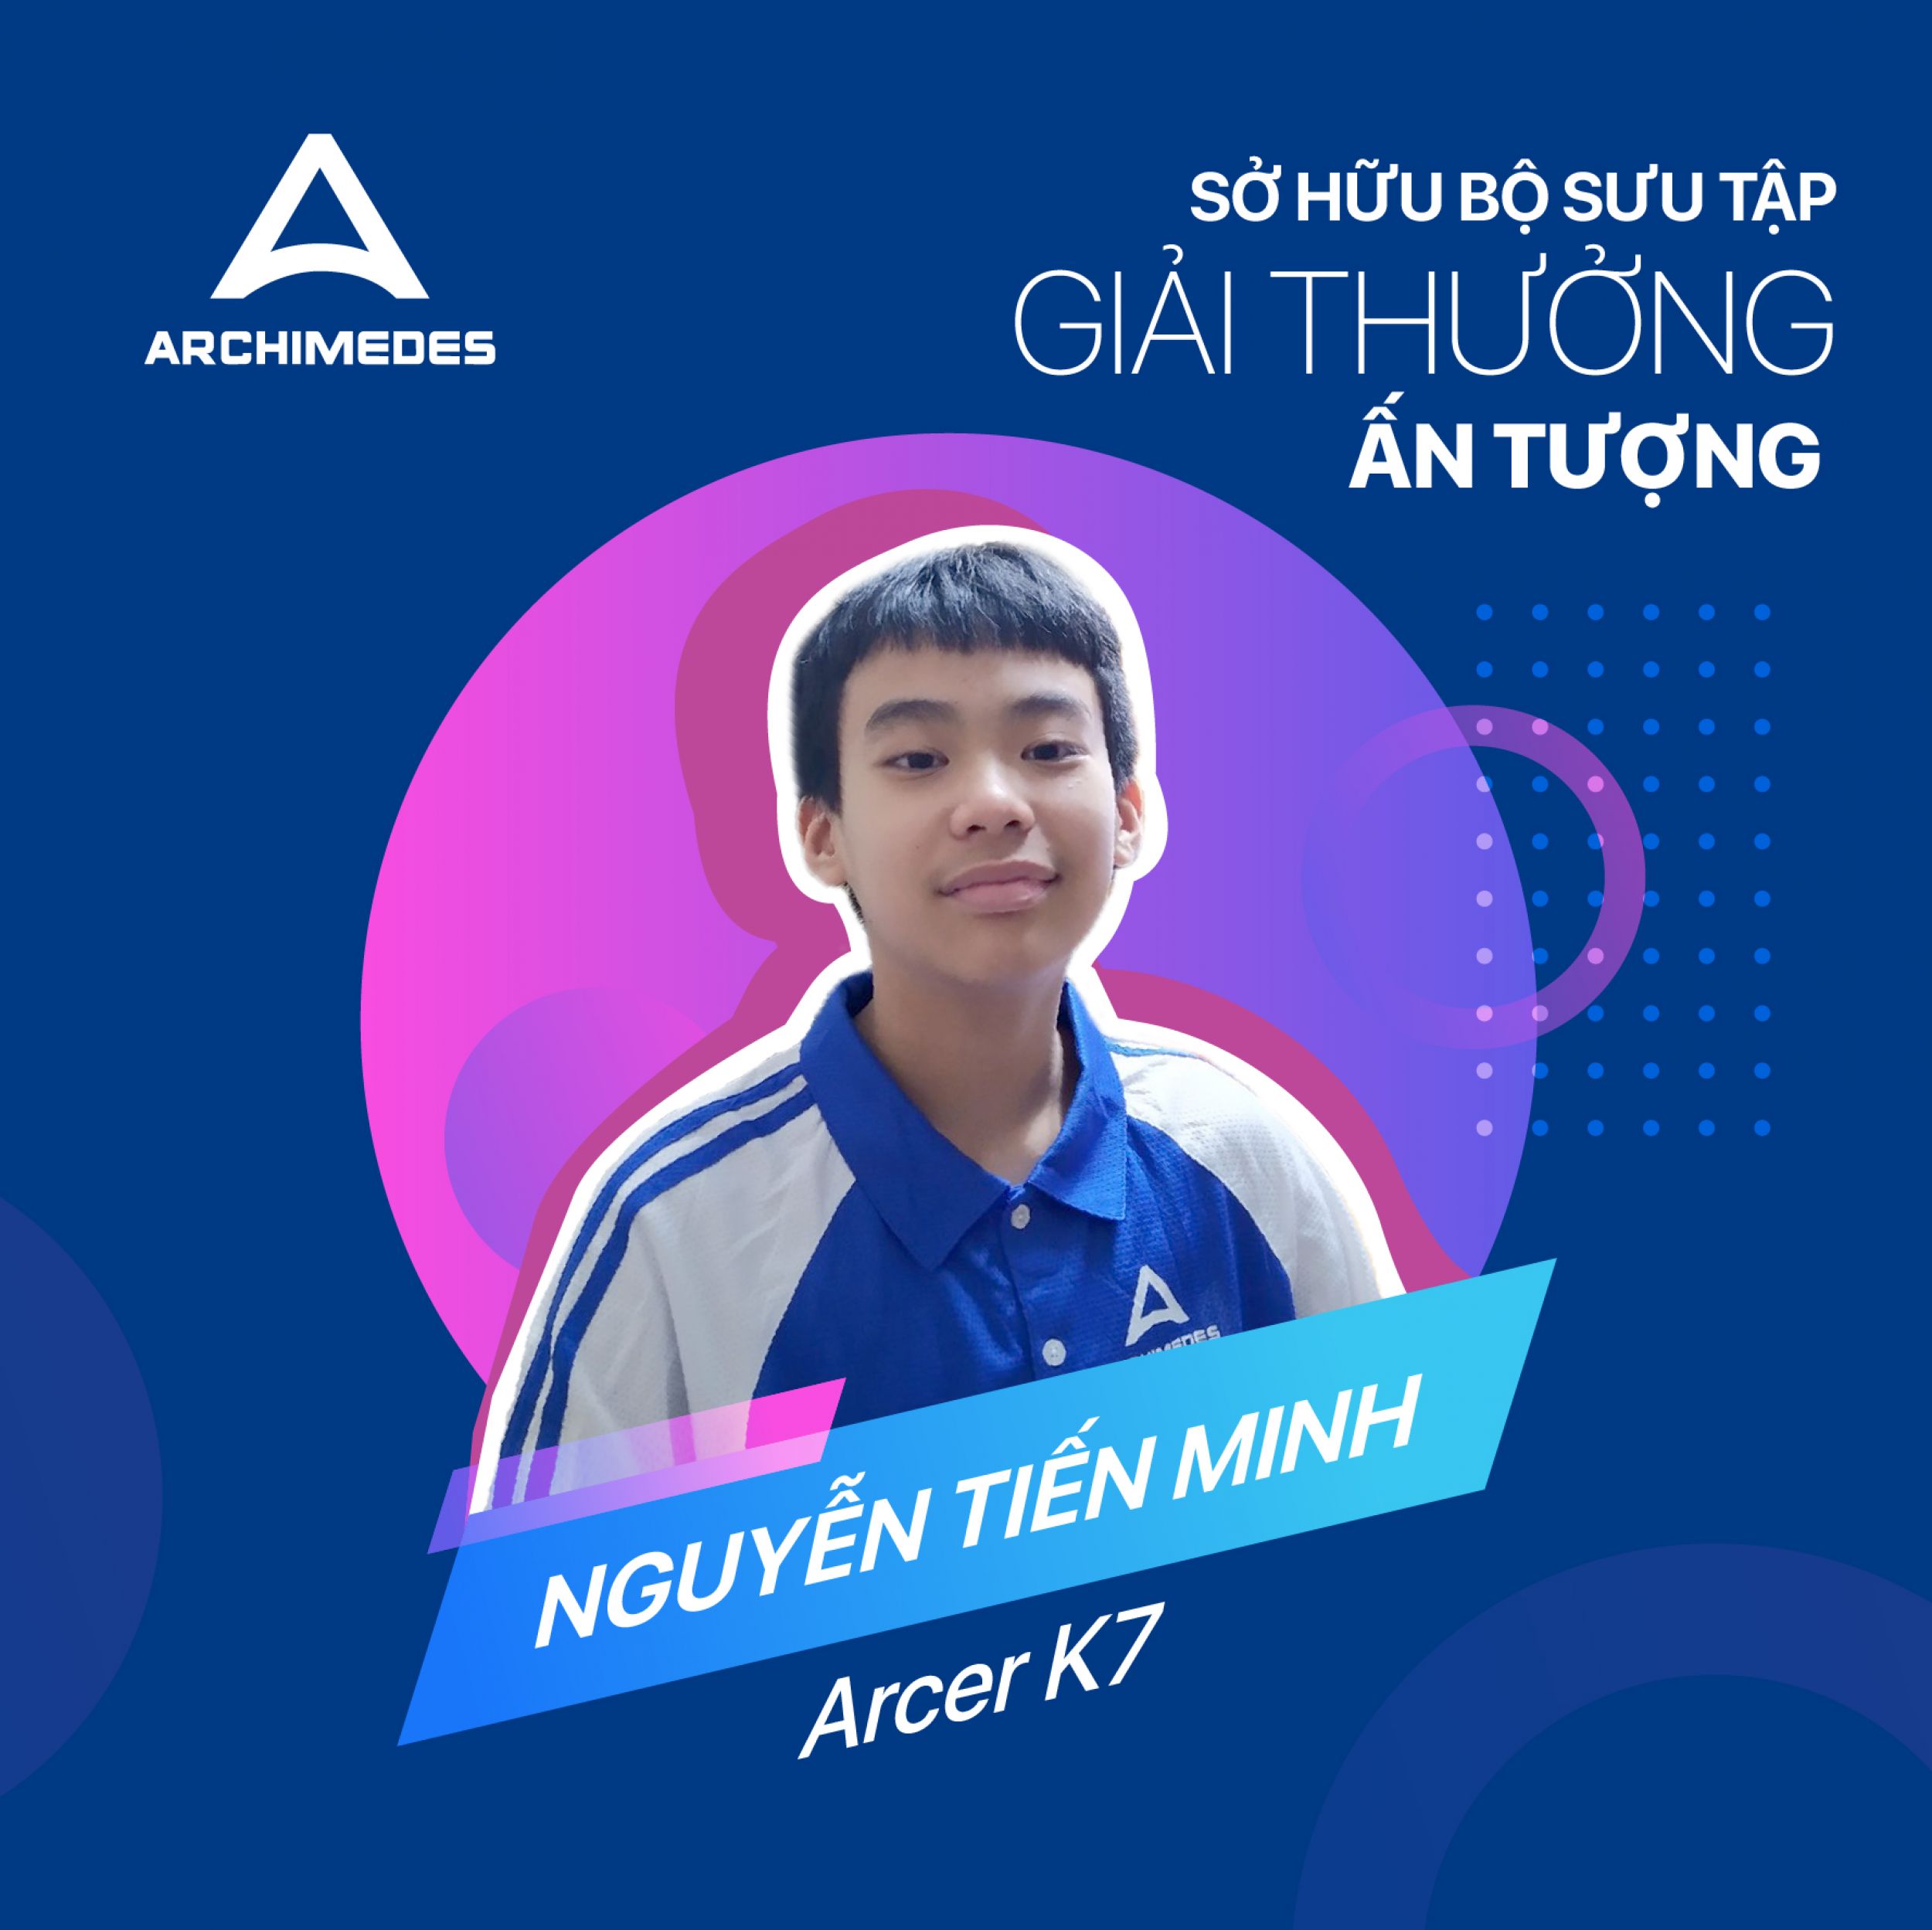 Nguyễn Tiến Minh - Arcer K7 sở hữu bộ sưu tập giải thưởng ấn tượng